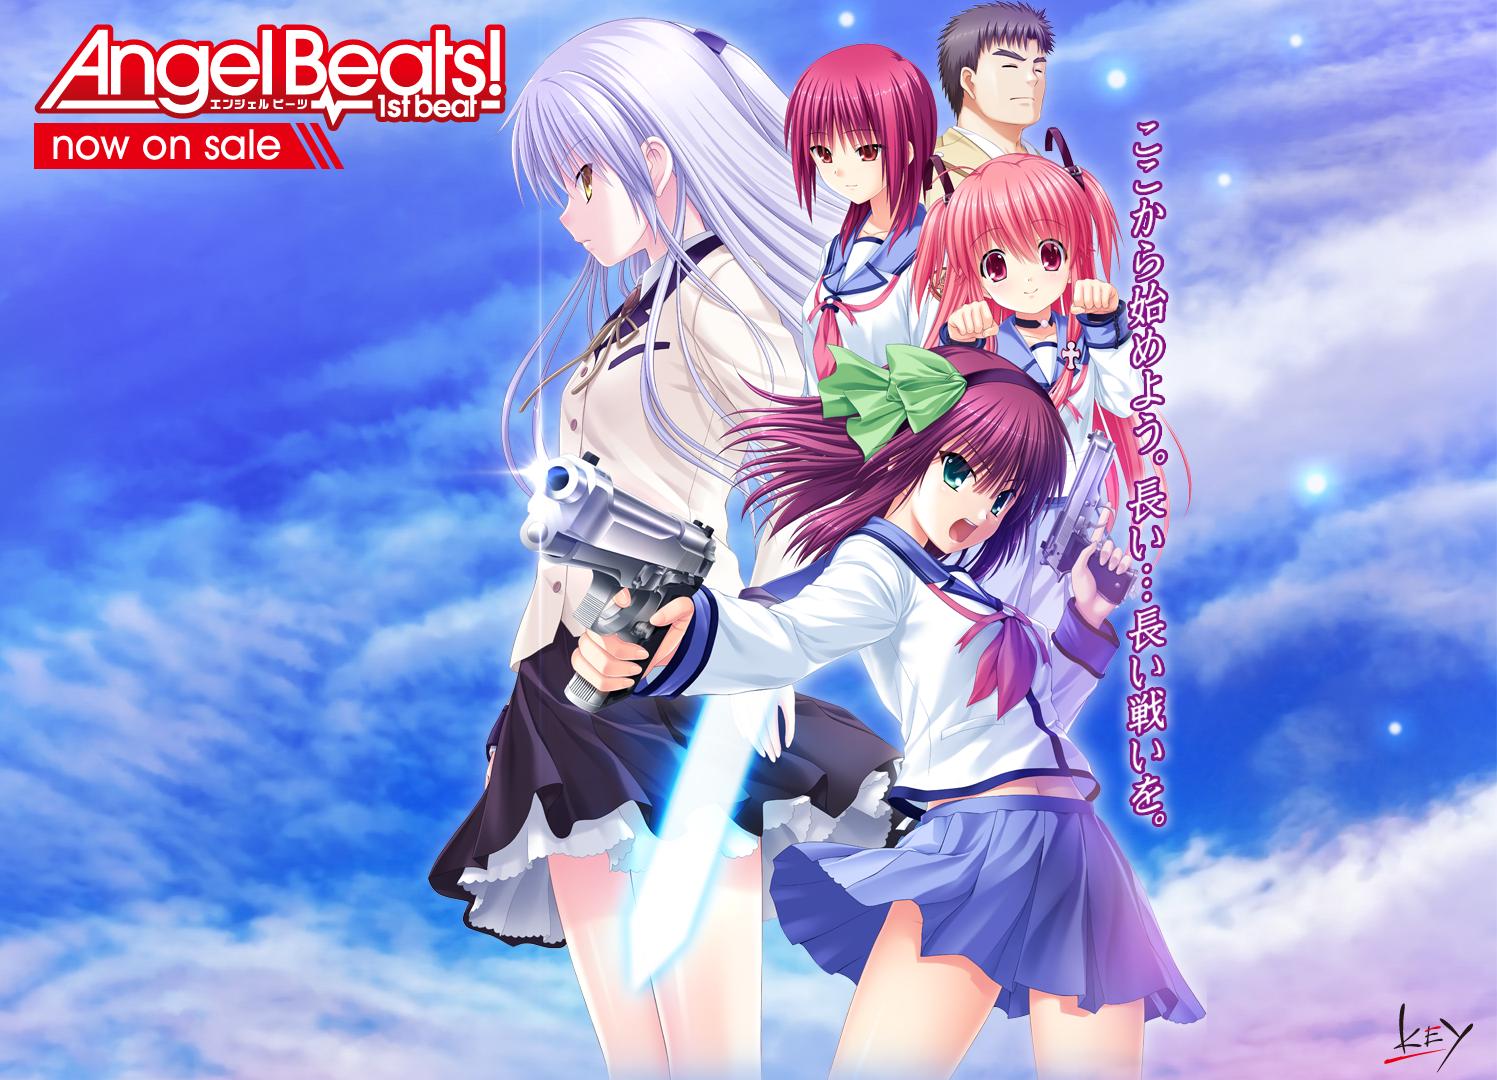 《Angel Beats! -1st beat-》汉化硬盘版下载